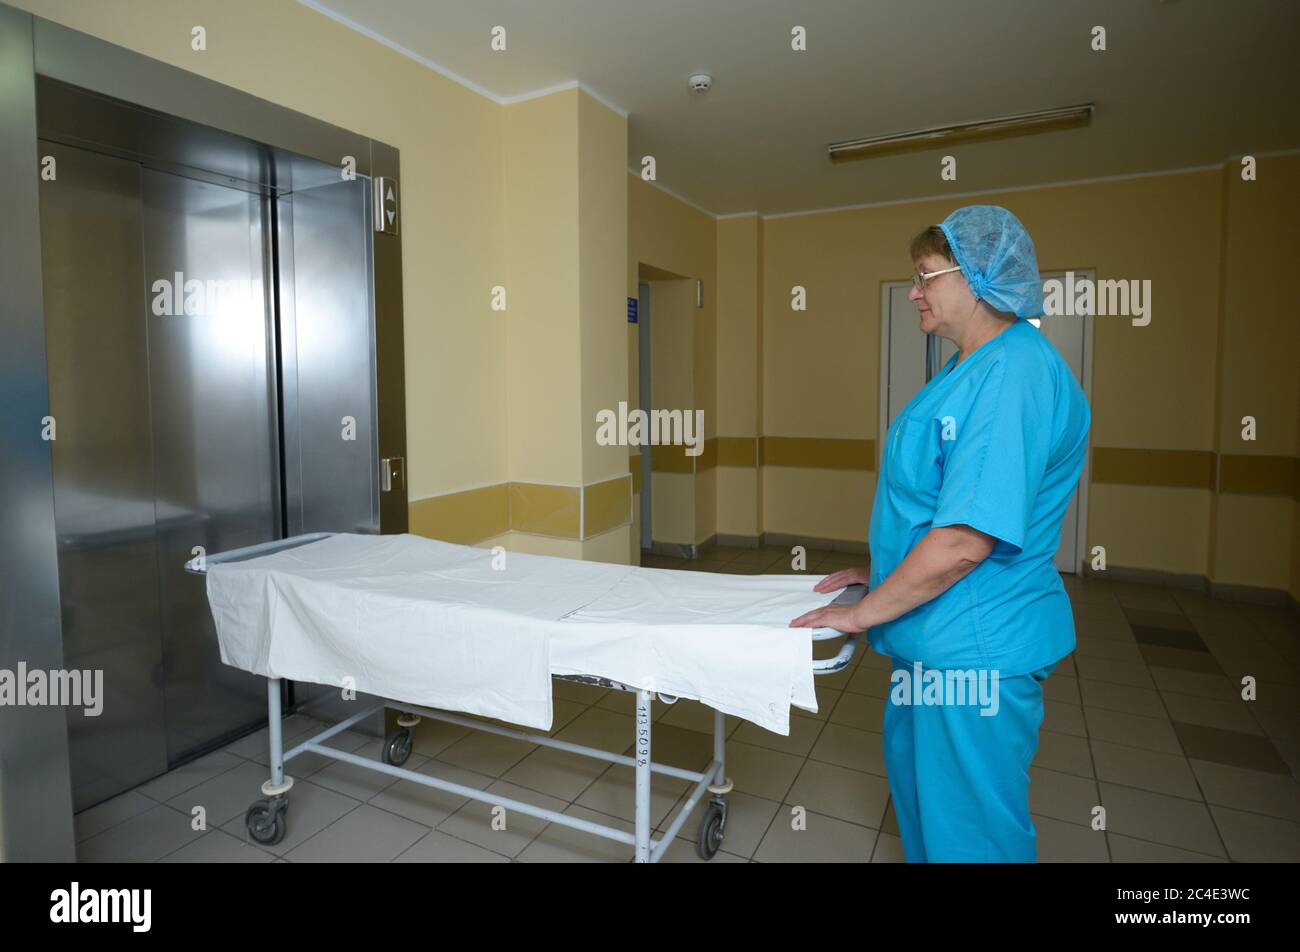 Krankenschwester in einem blauen Laborkittel, die mit einer Bahre auf dem Flur des Krankenhauses steht und auf einen Aufzug wartet Stockfoto